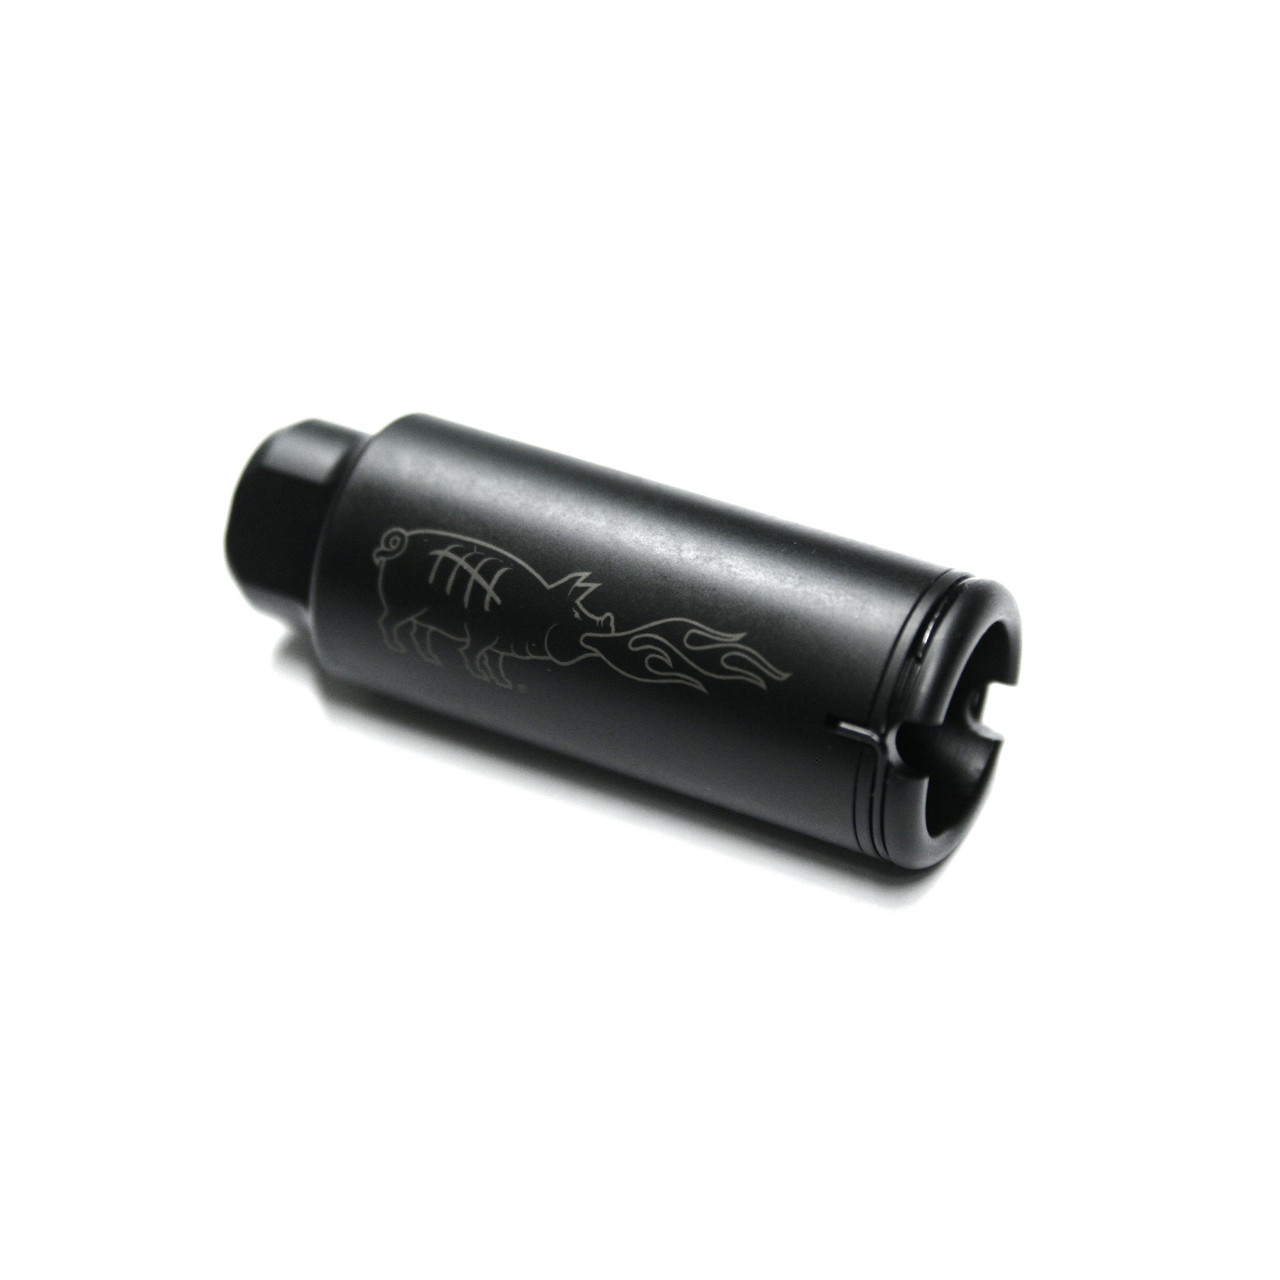 Noveske 5000519 Kx5 Flash Suppressor 1/2x28